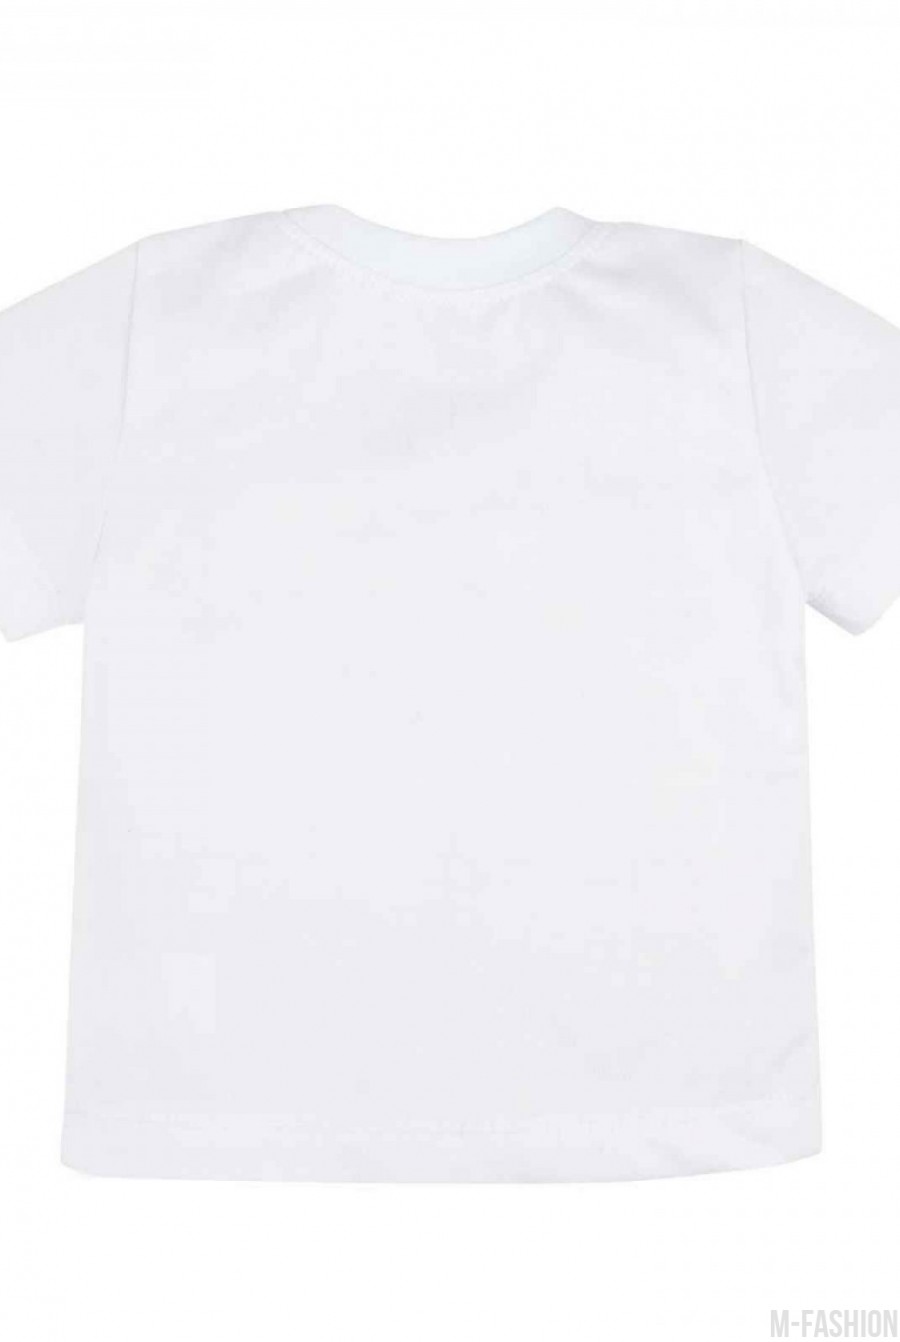 Белая трикотажная футболка с возможностью индивидуальной печати имени (латиница) и цифры (1-7) на принте- Фото 4